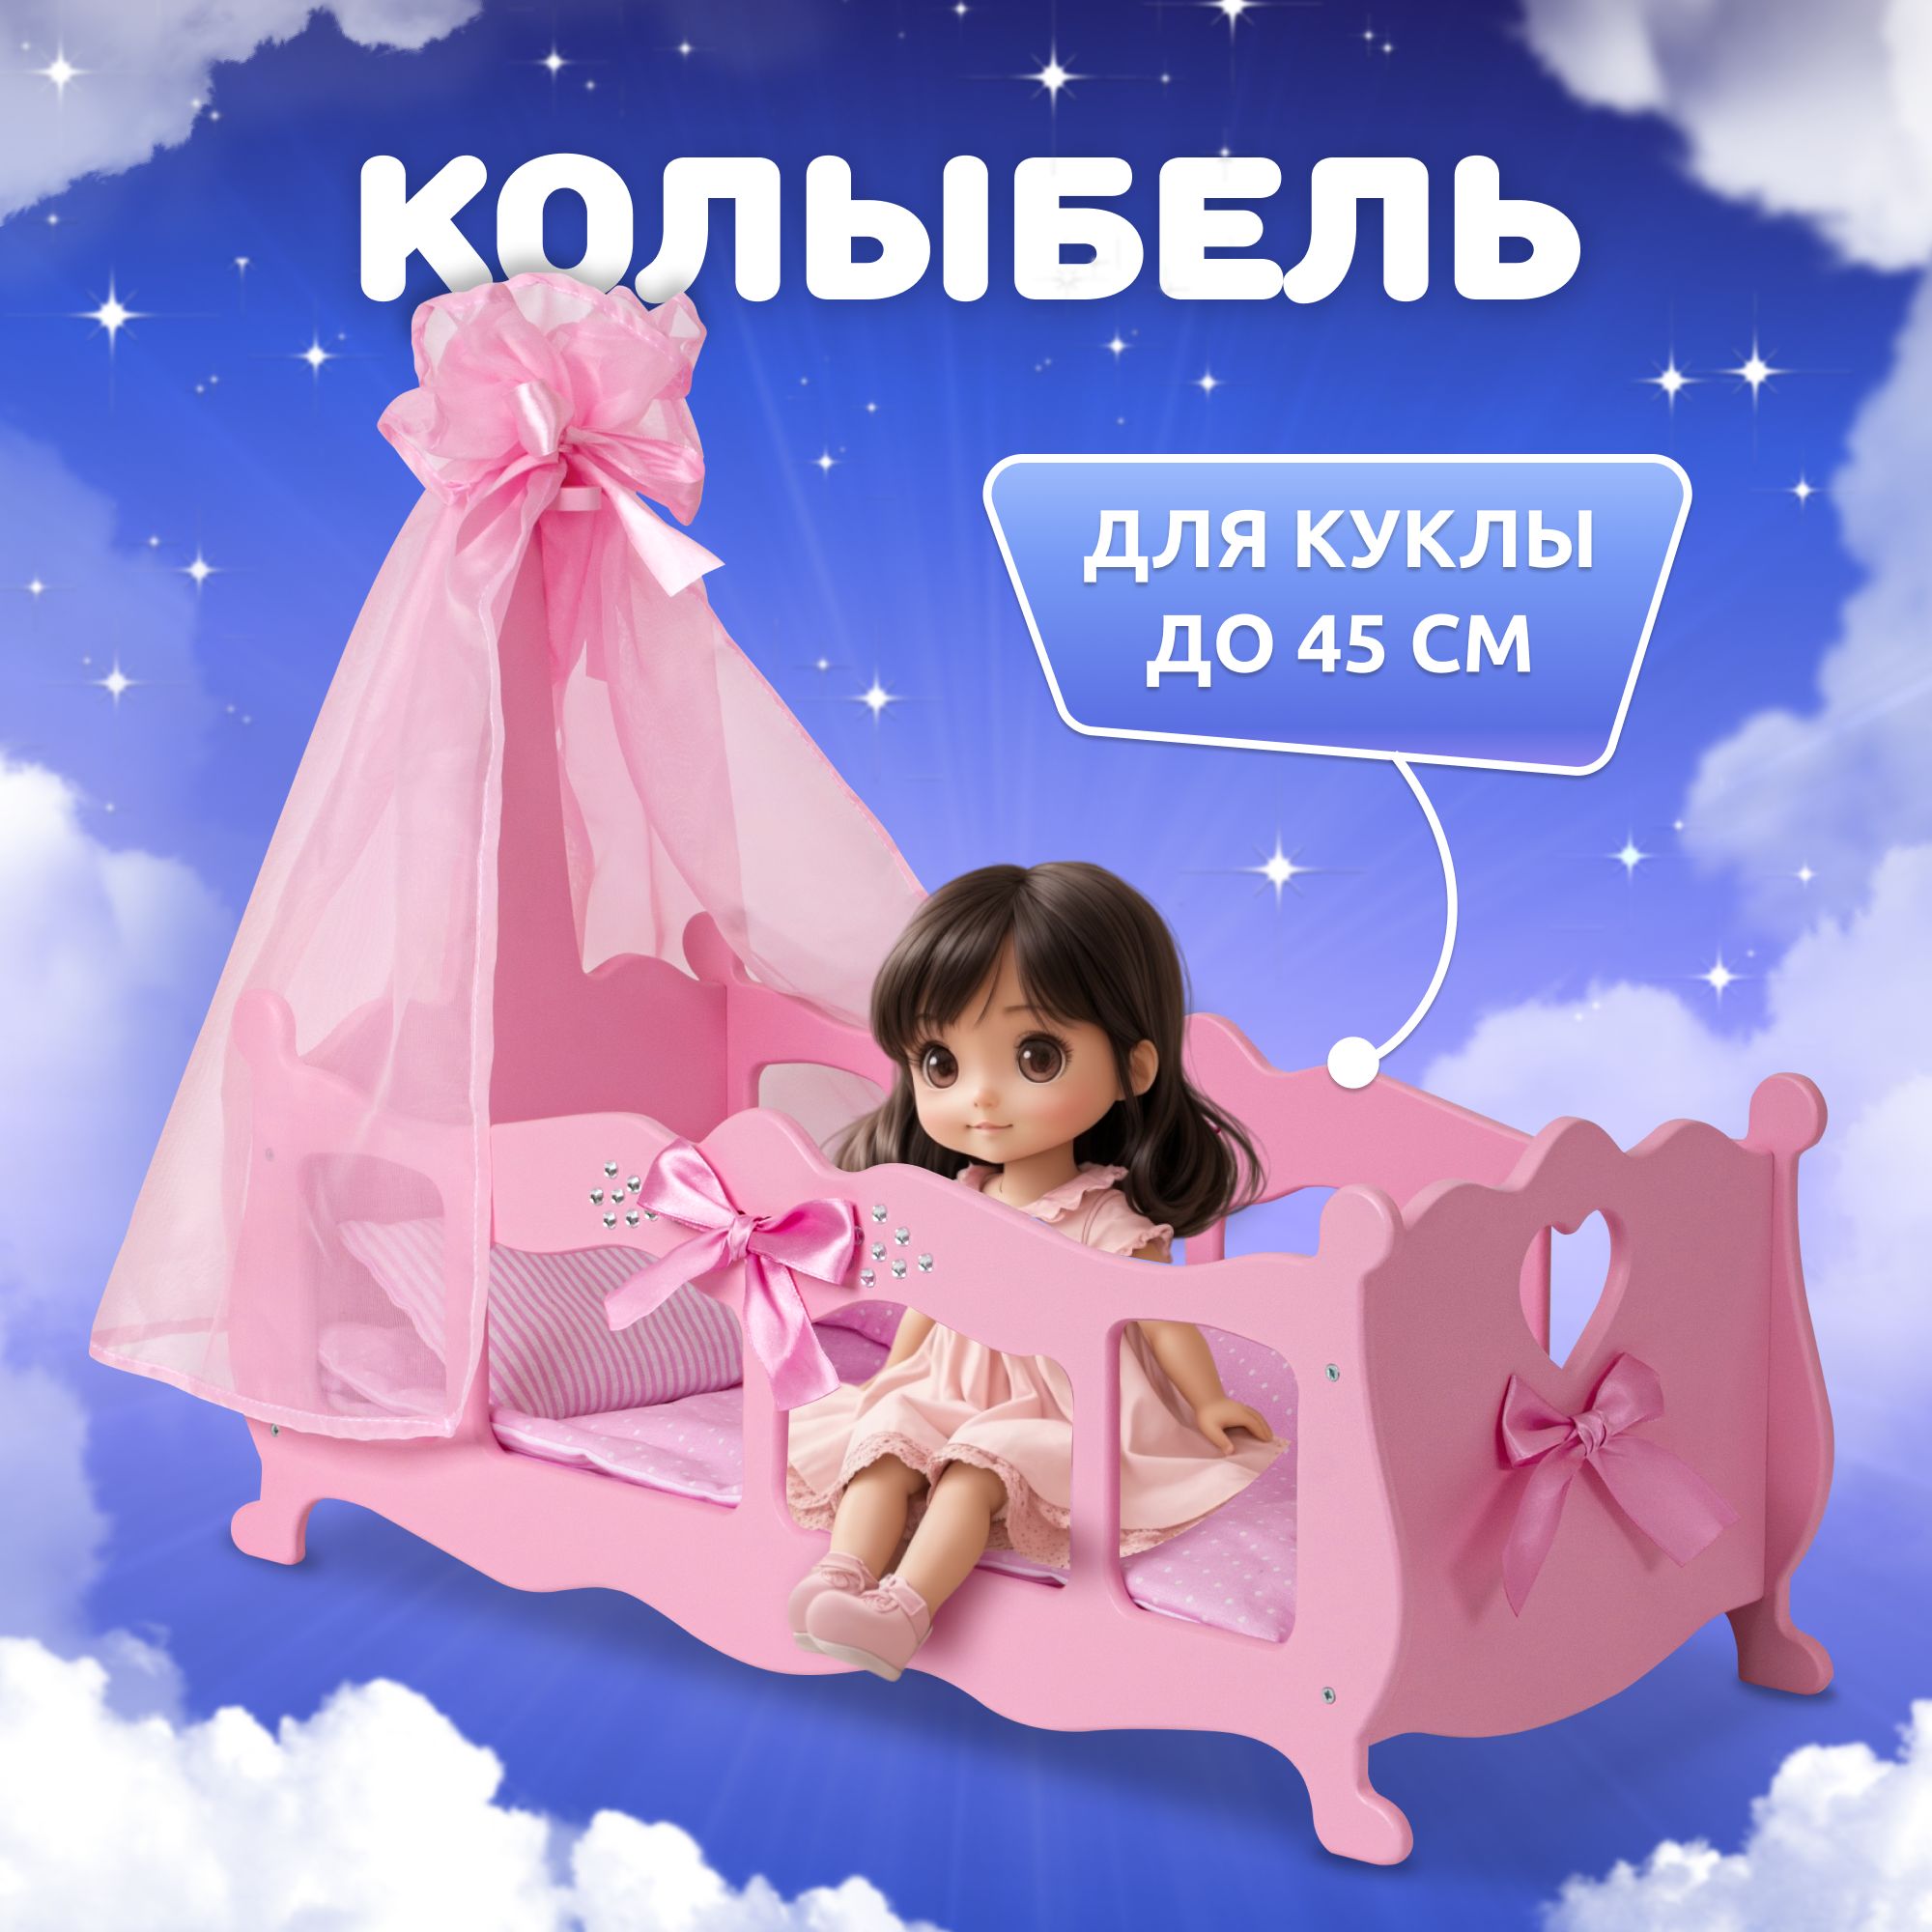 Коляска Делюкс 3 в 1 для куклы Baby Born (Беби Бон) купить в Екатеринбурге - Neo Baby